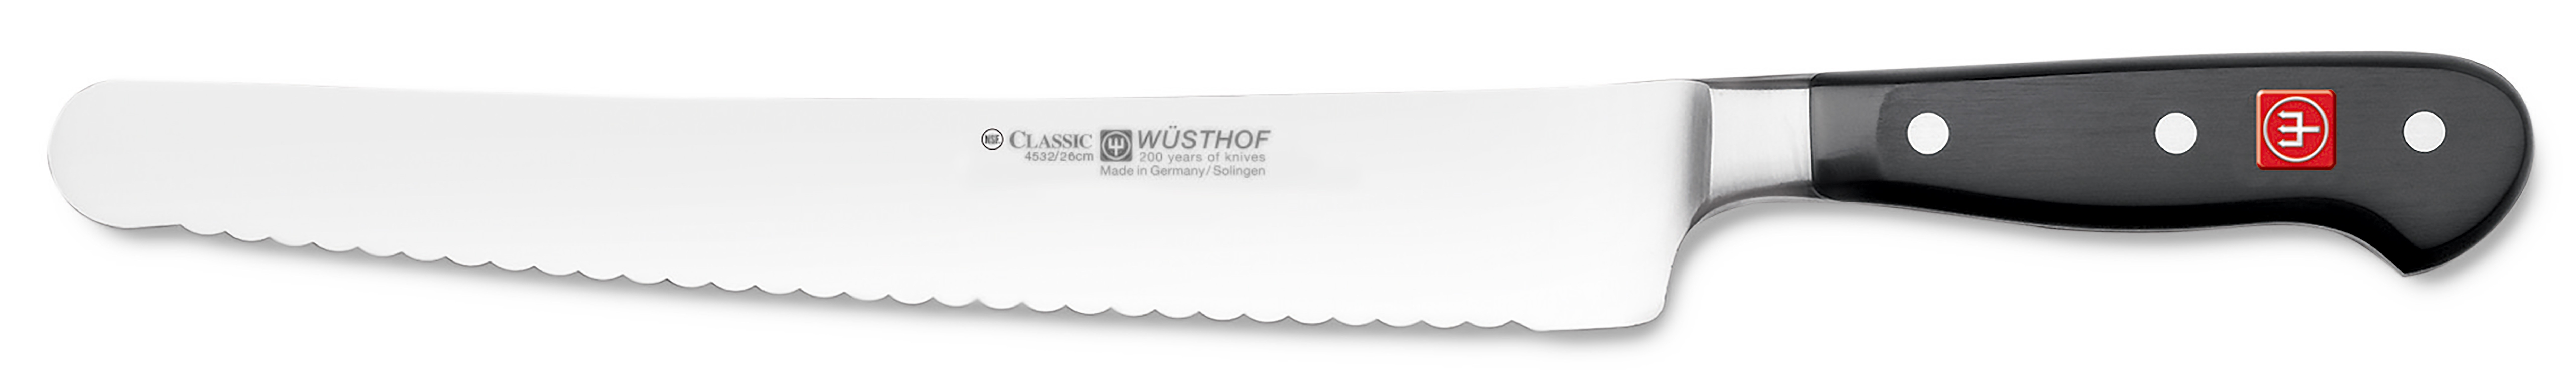 Wüsthof CLASSIC Super Slicer Wave mit Wellenschliff 26cm